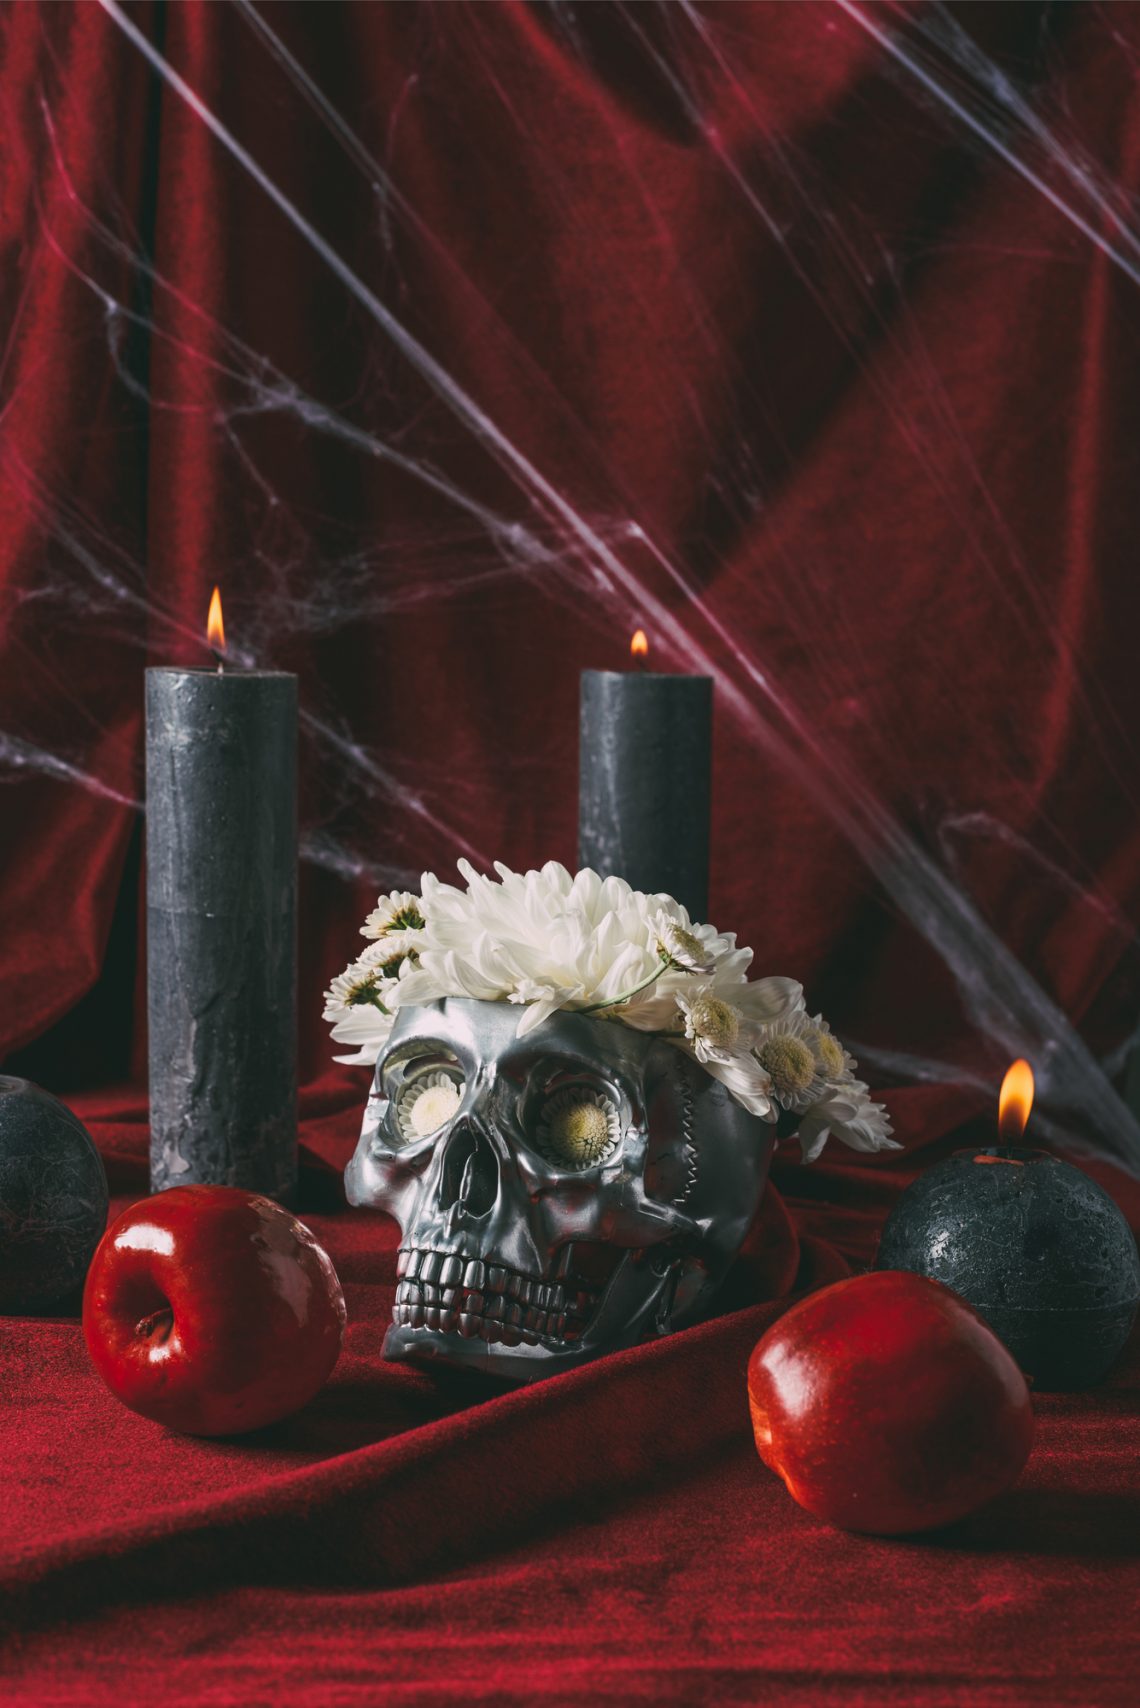 Фото черепа в венке из цветов со свечами, яблоками и паутиной